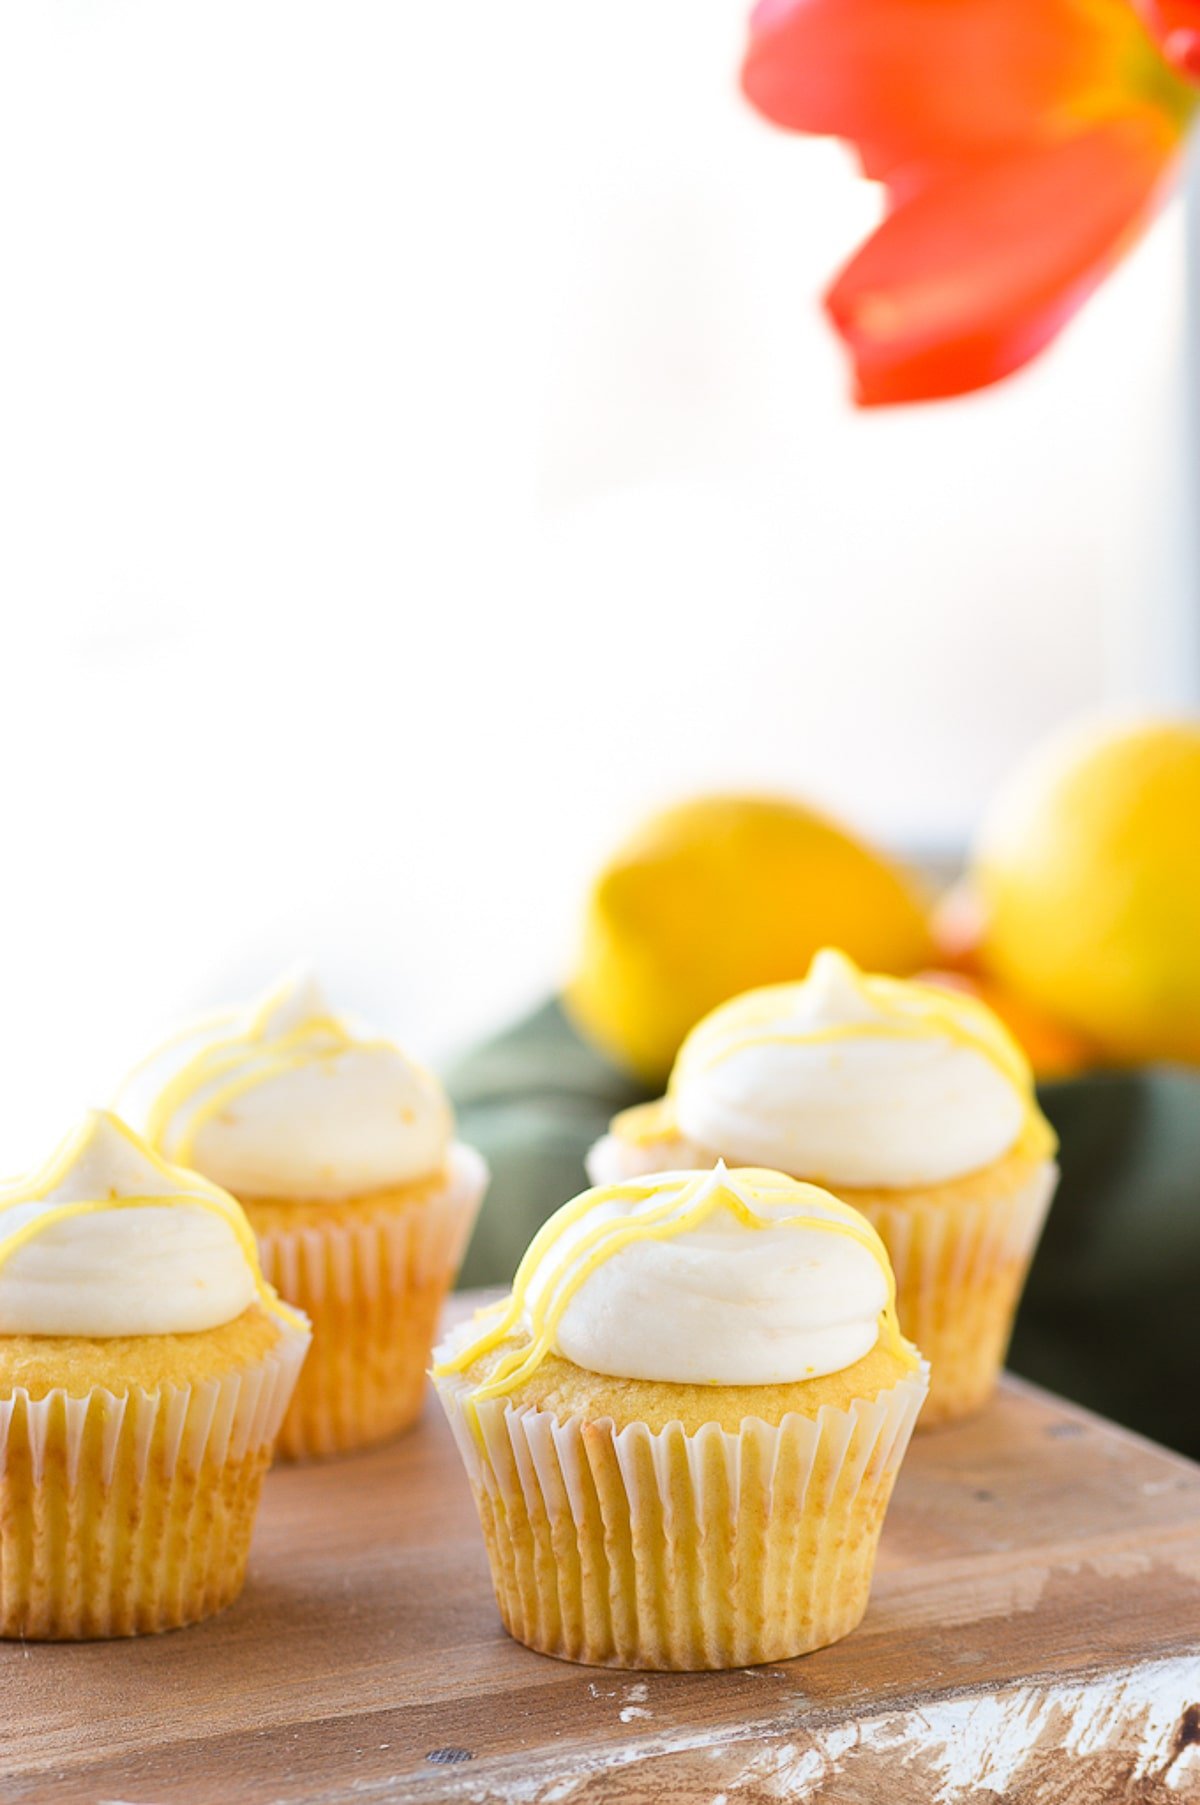 lemon buttercream frosting on cupcakes on wood serving platter.